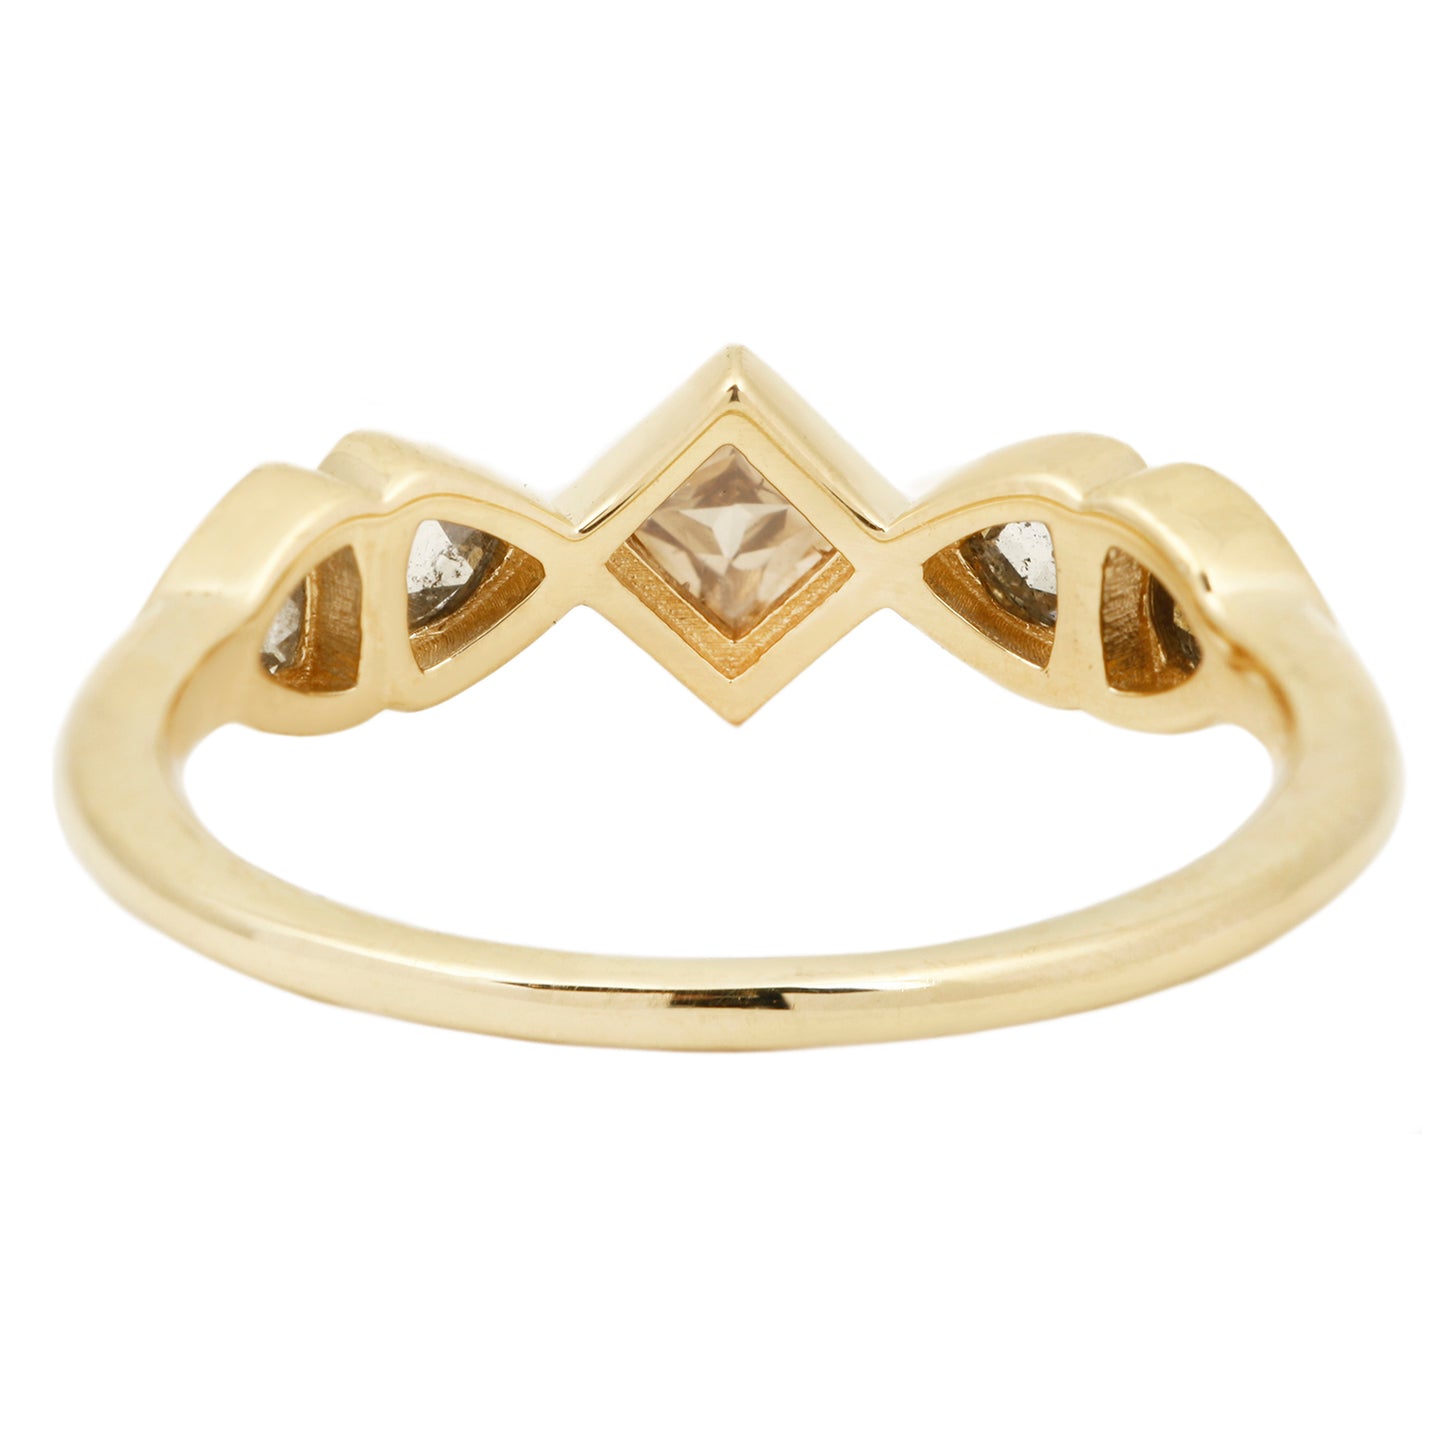 Celestial Crown Diamond Ring